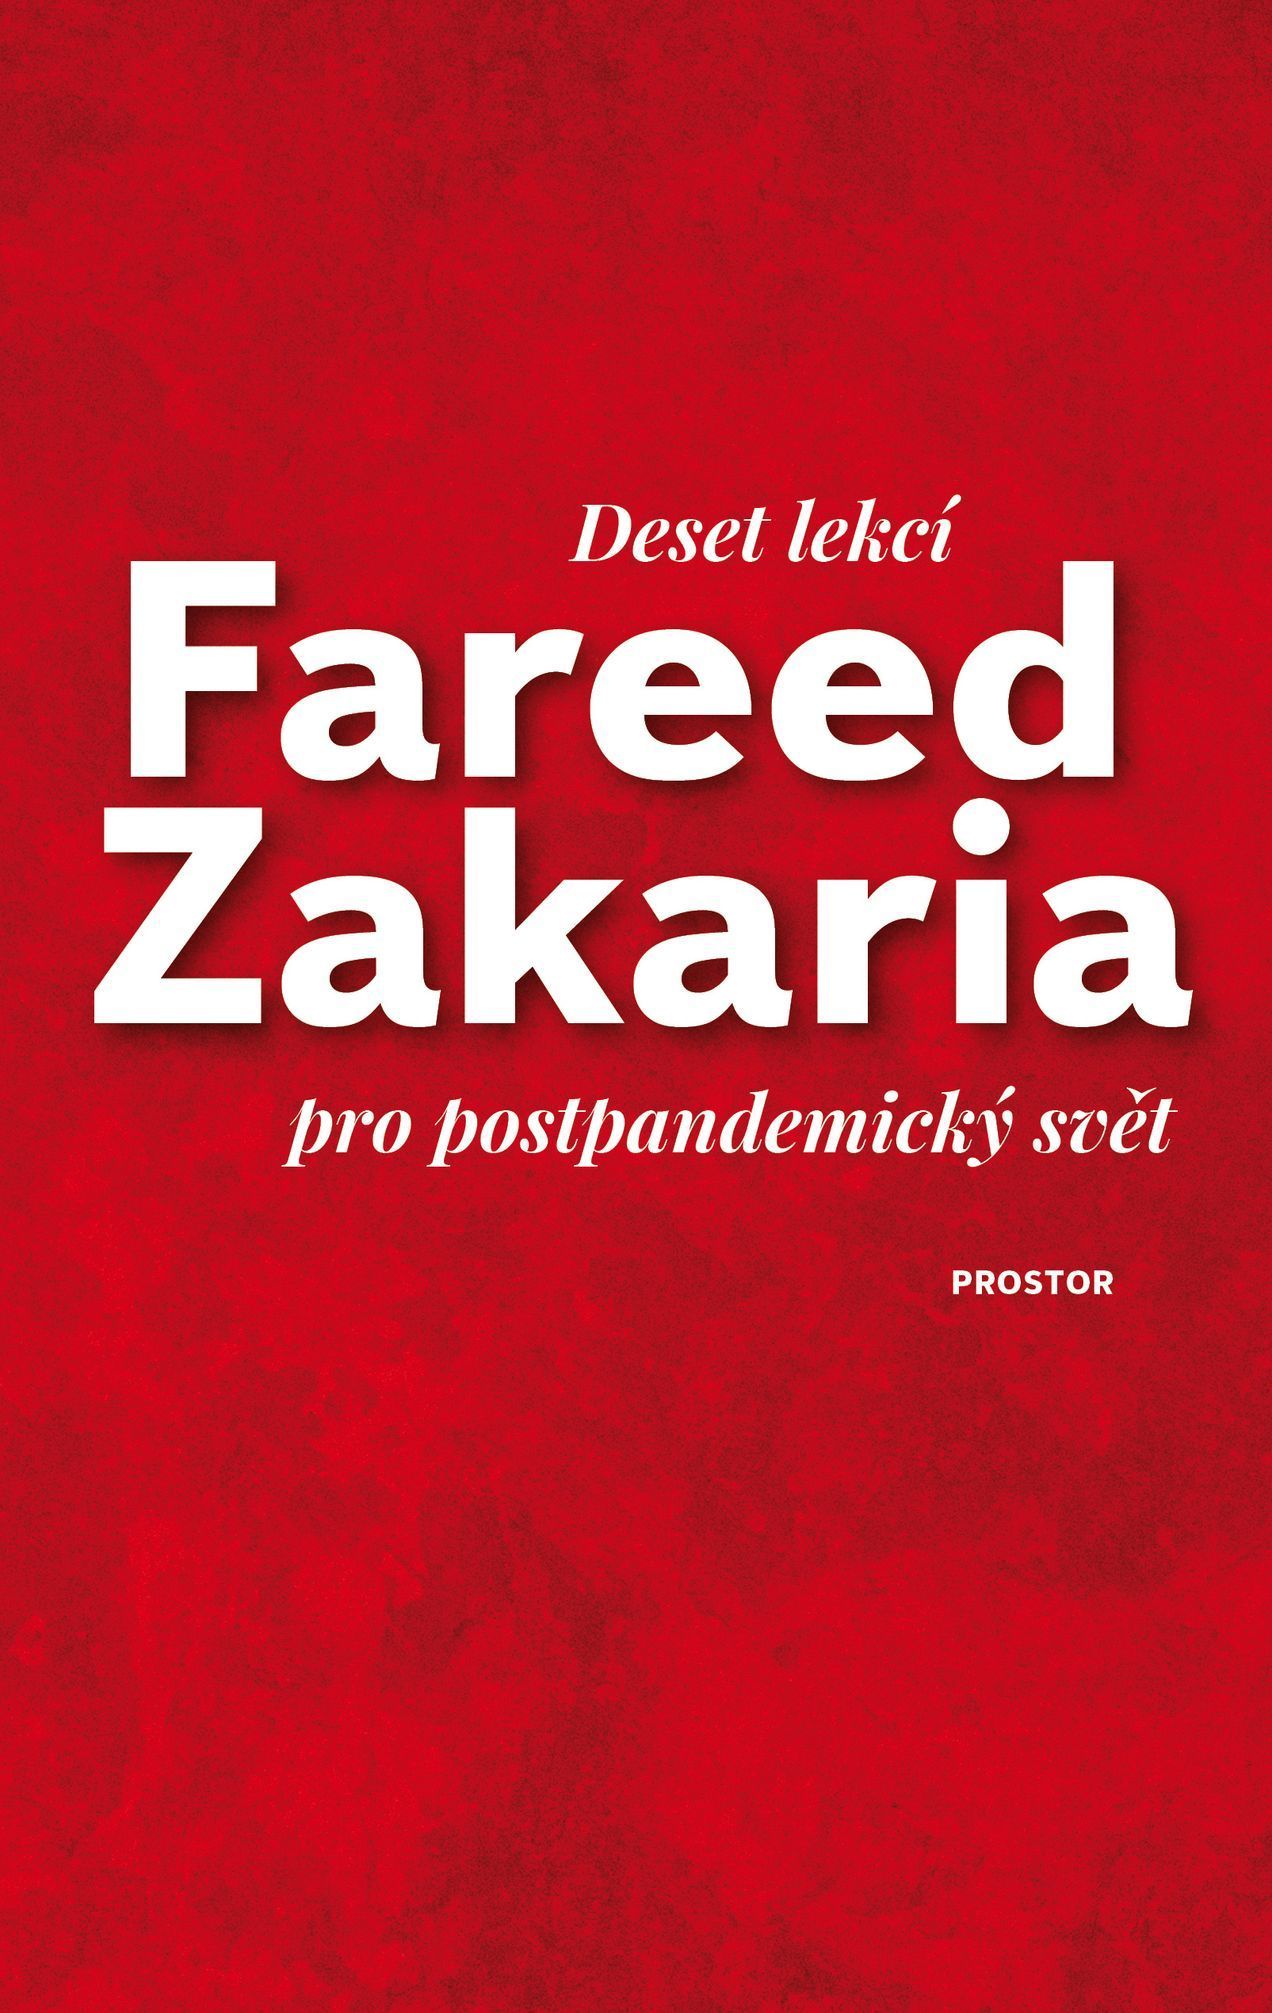 Fareed Zakaria: Deset lekcí pro pandemický svět